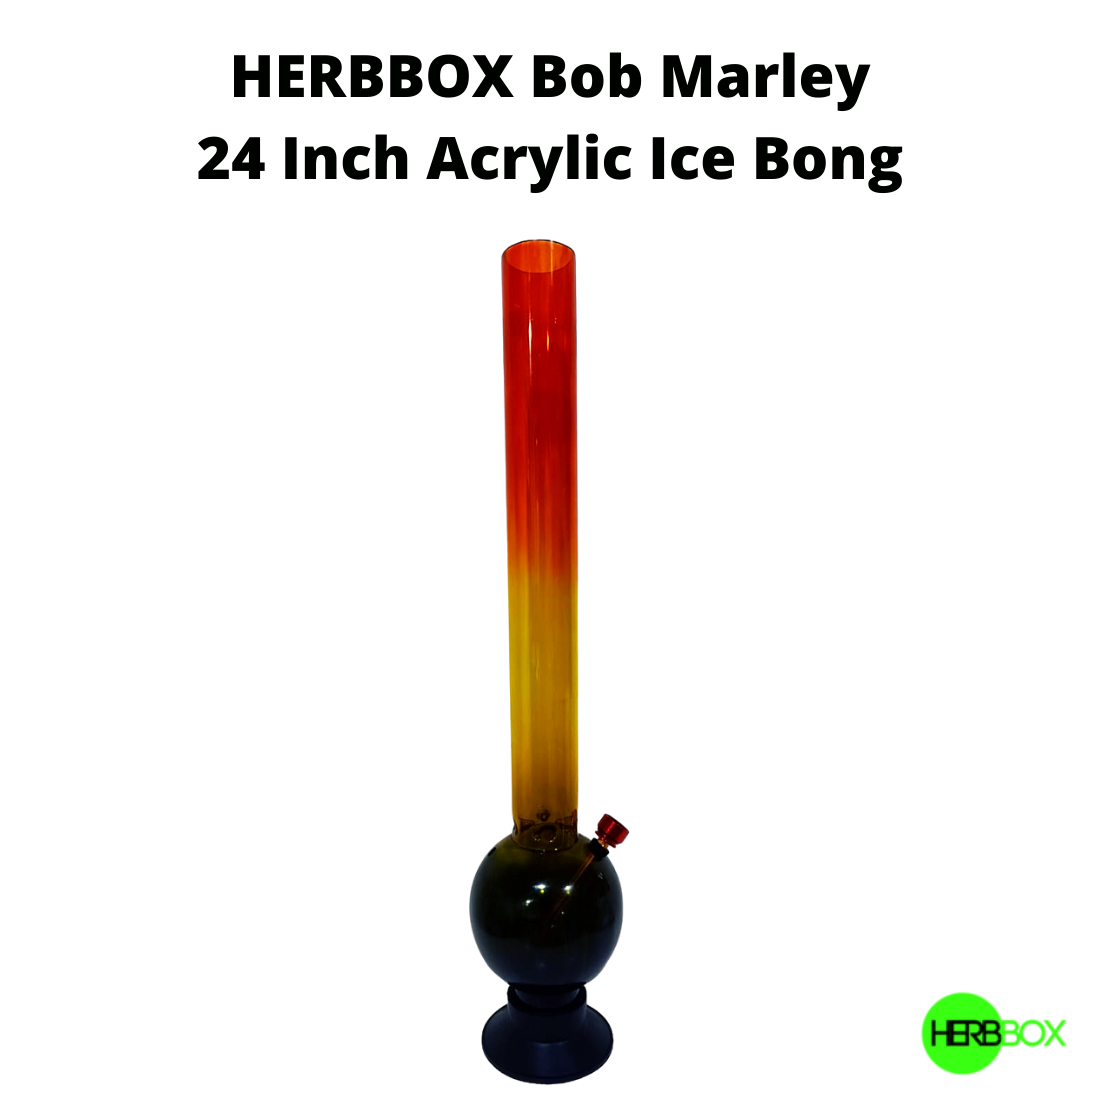 HERBBOX Bob Marley Acrylic Ice Bong are now available on Jonnybaba Lifestyle